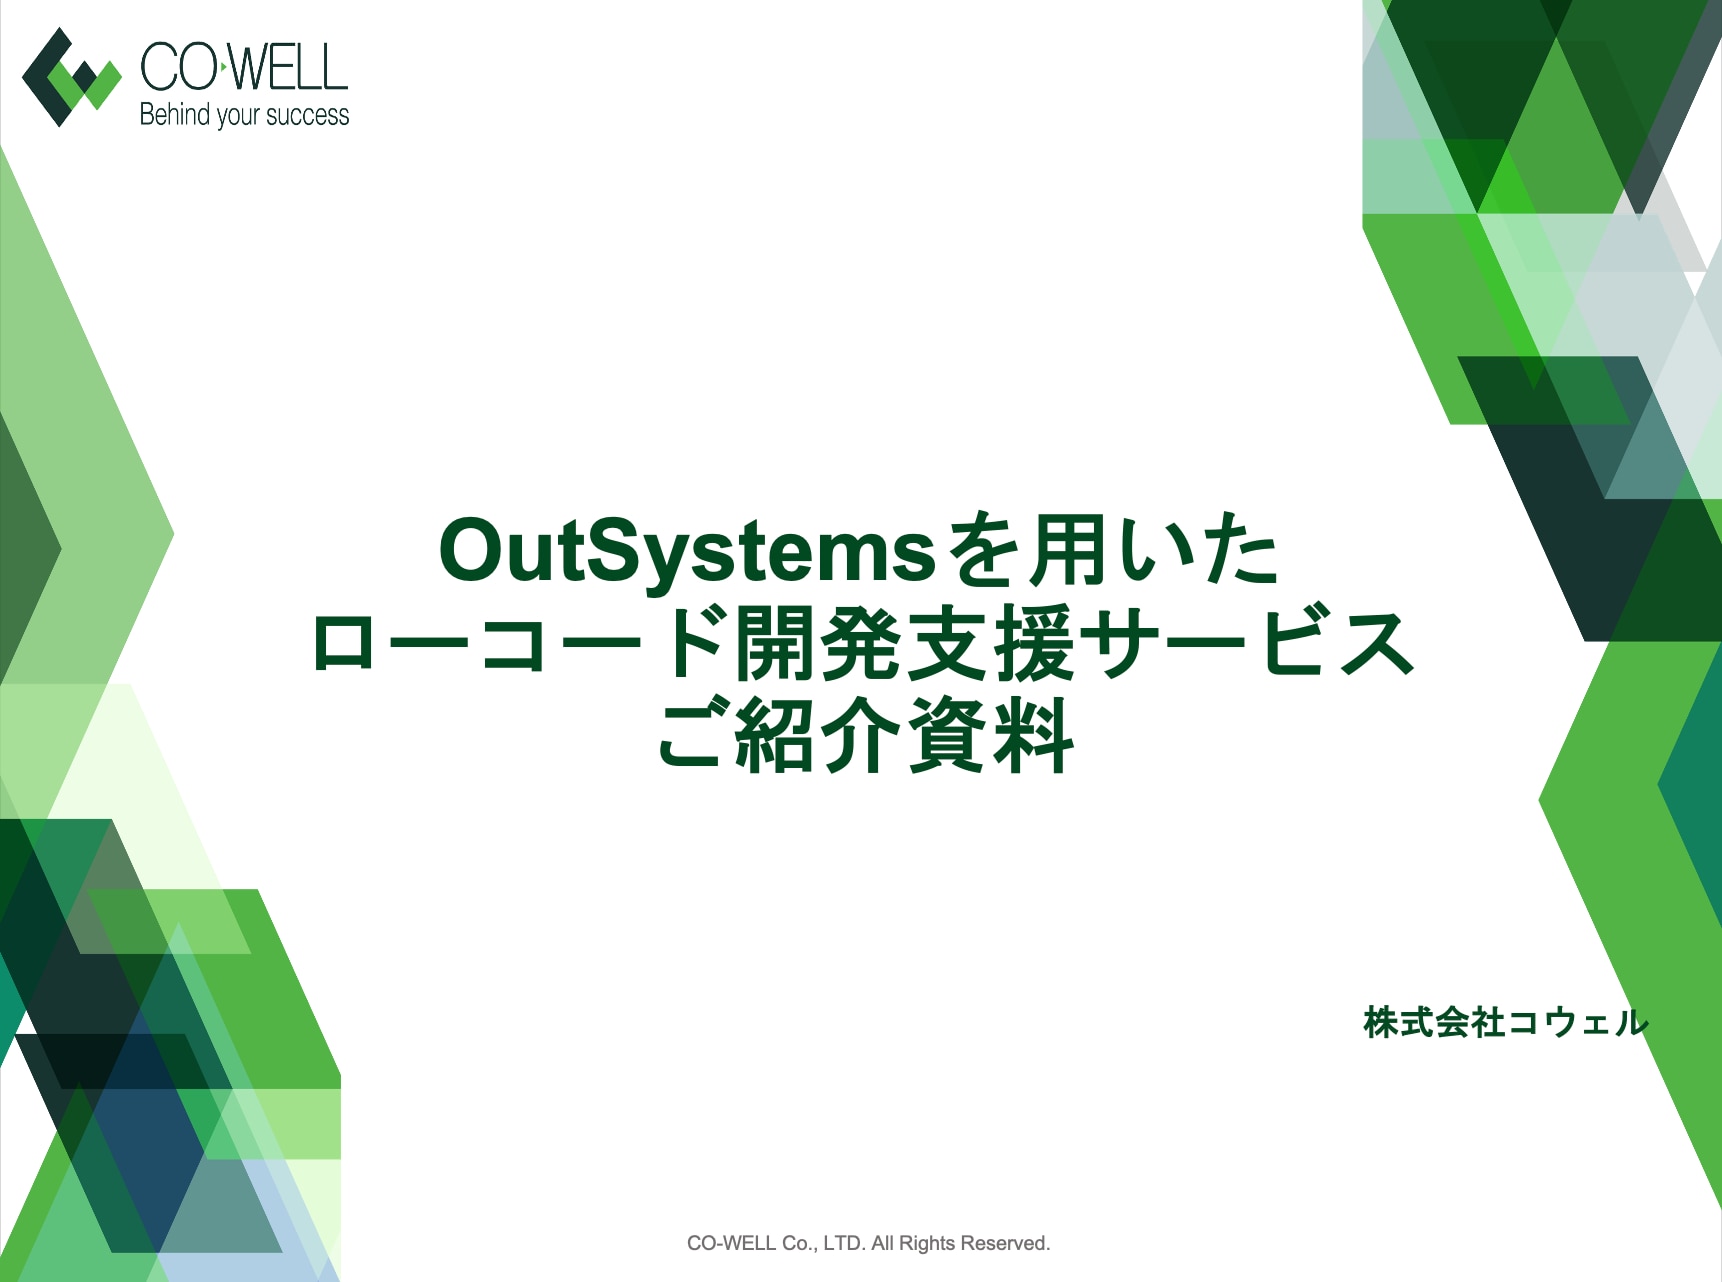 Outsystems資料一覧DLイメージ